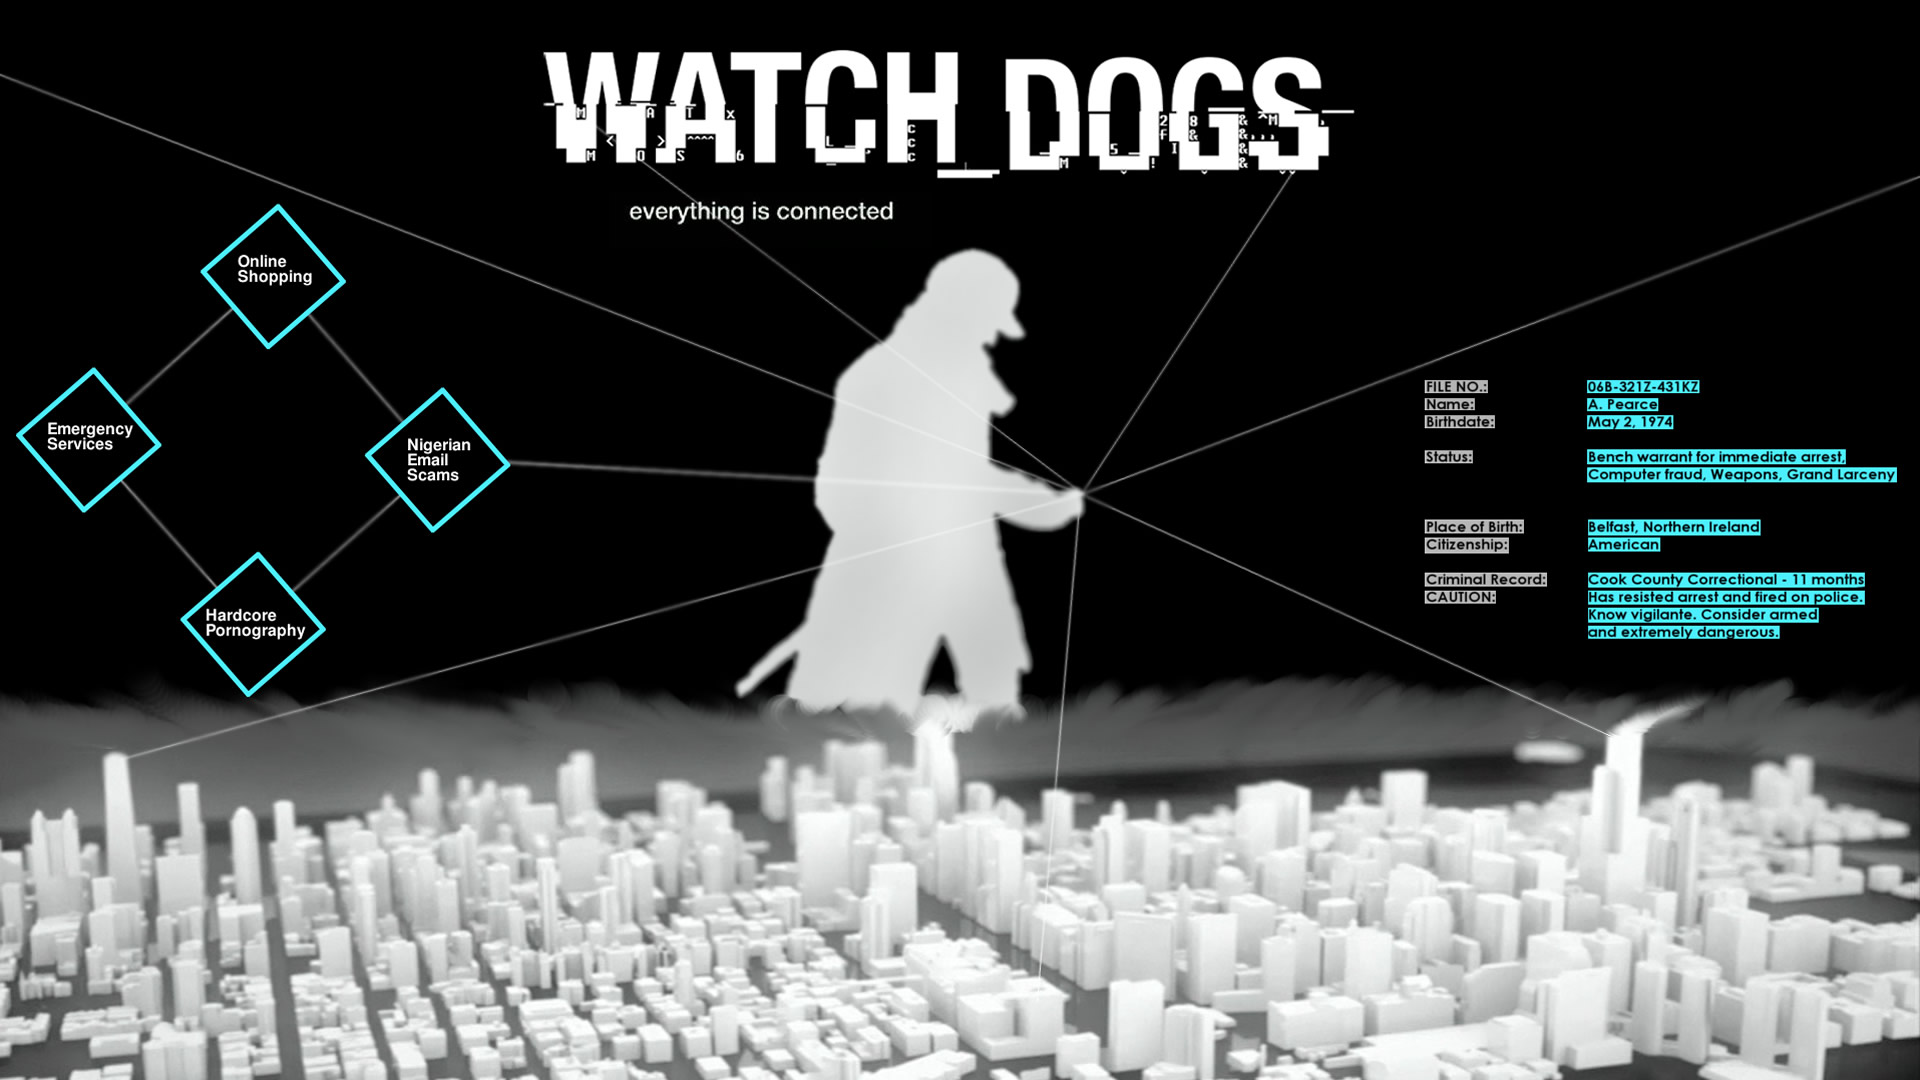 壁紙集 Wallpapers ウォッチドッグス Watch Dogs 攻略情報 ファンサイト